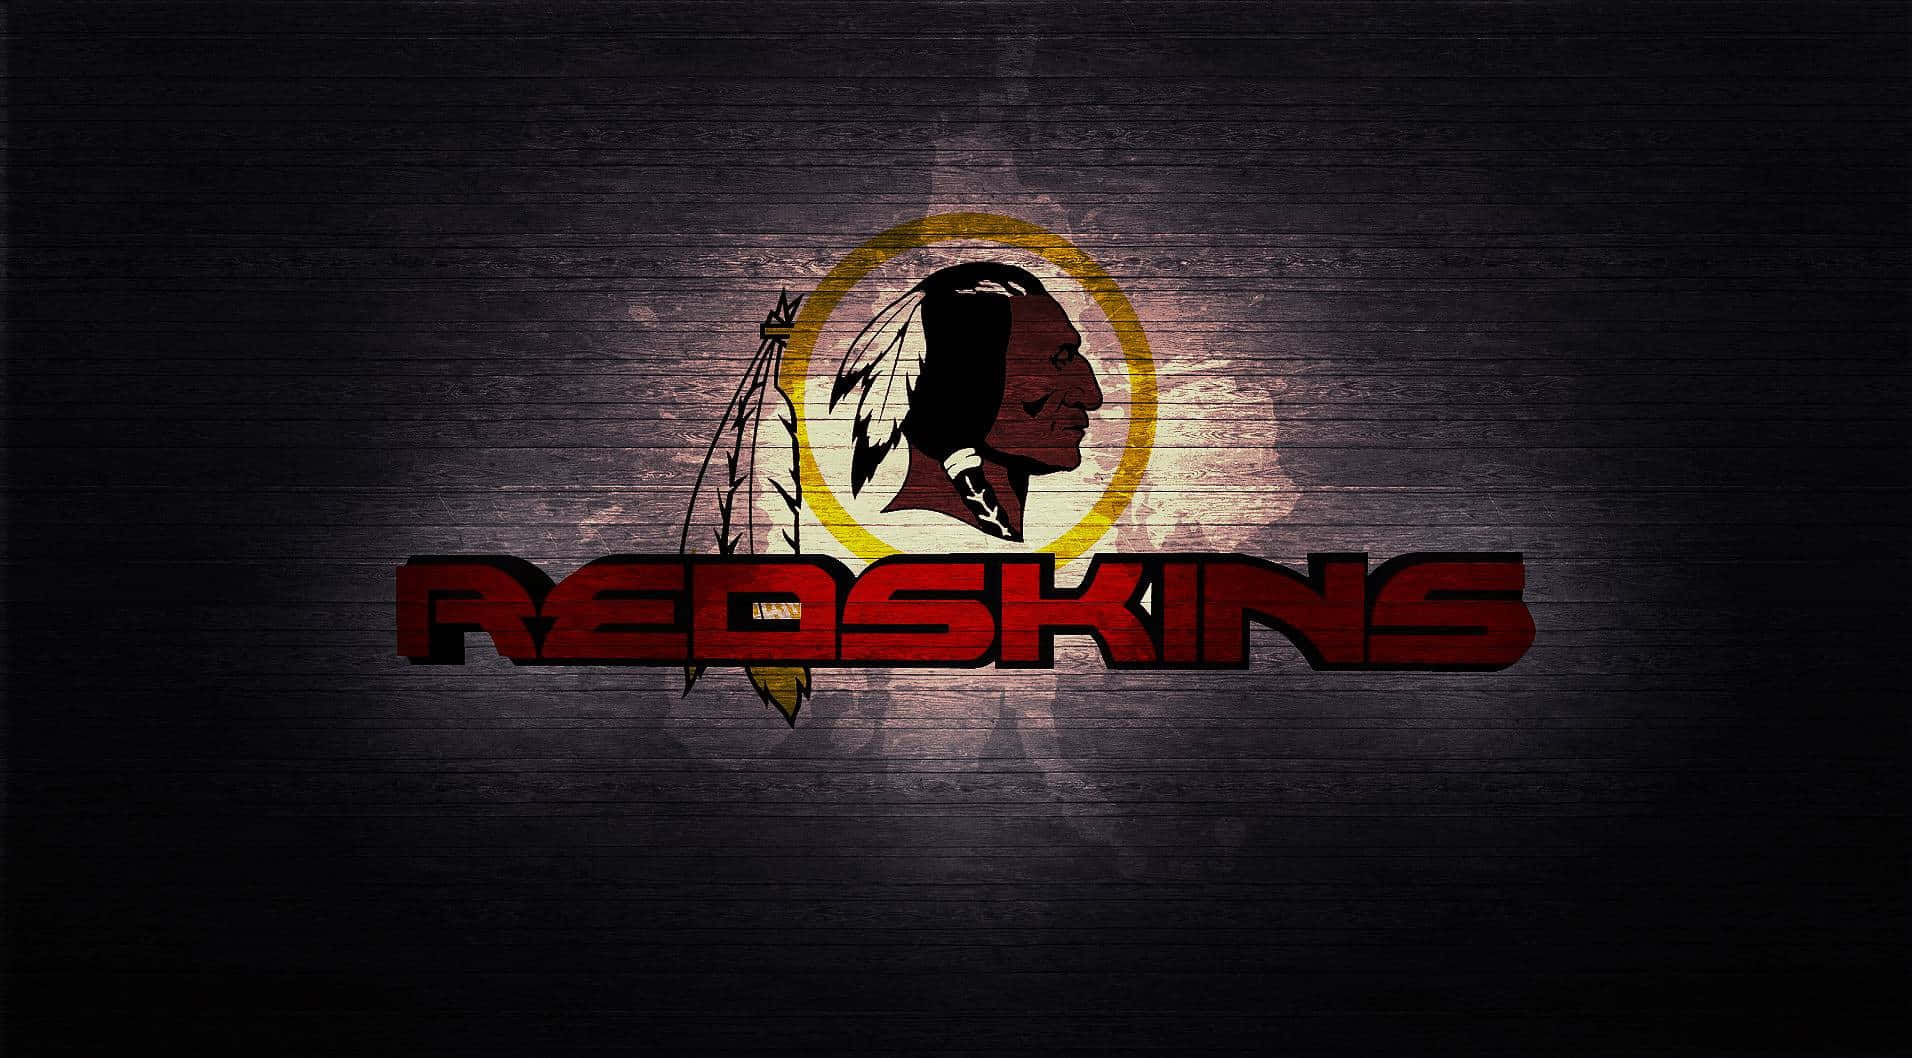 De Washington Redskins er stolte af at repræsentere deres division på banen. Wallpaper